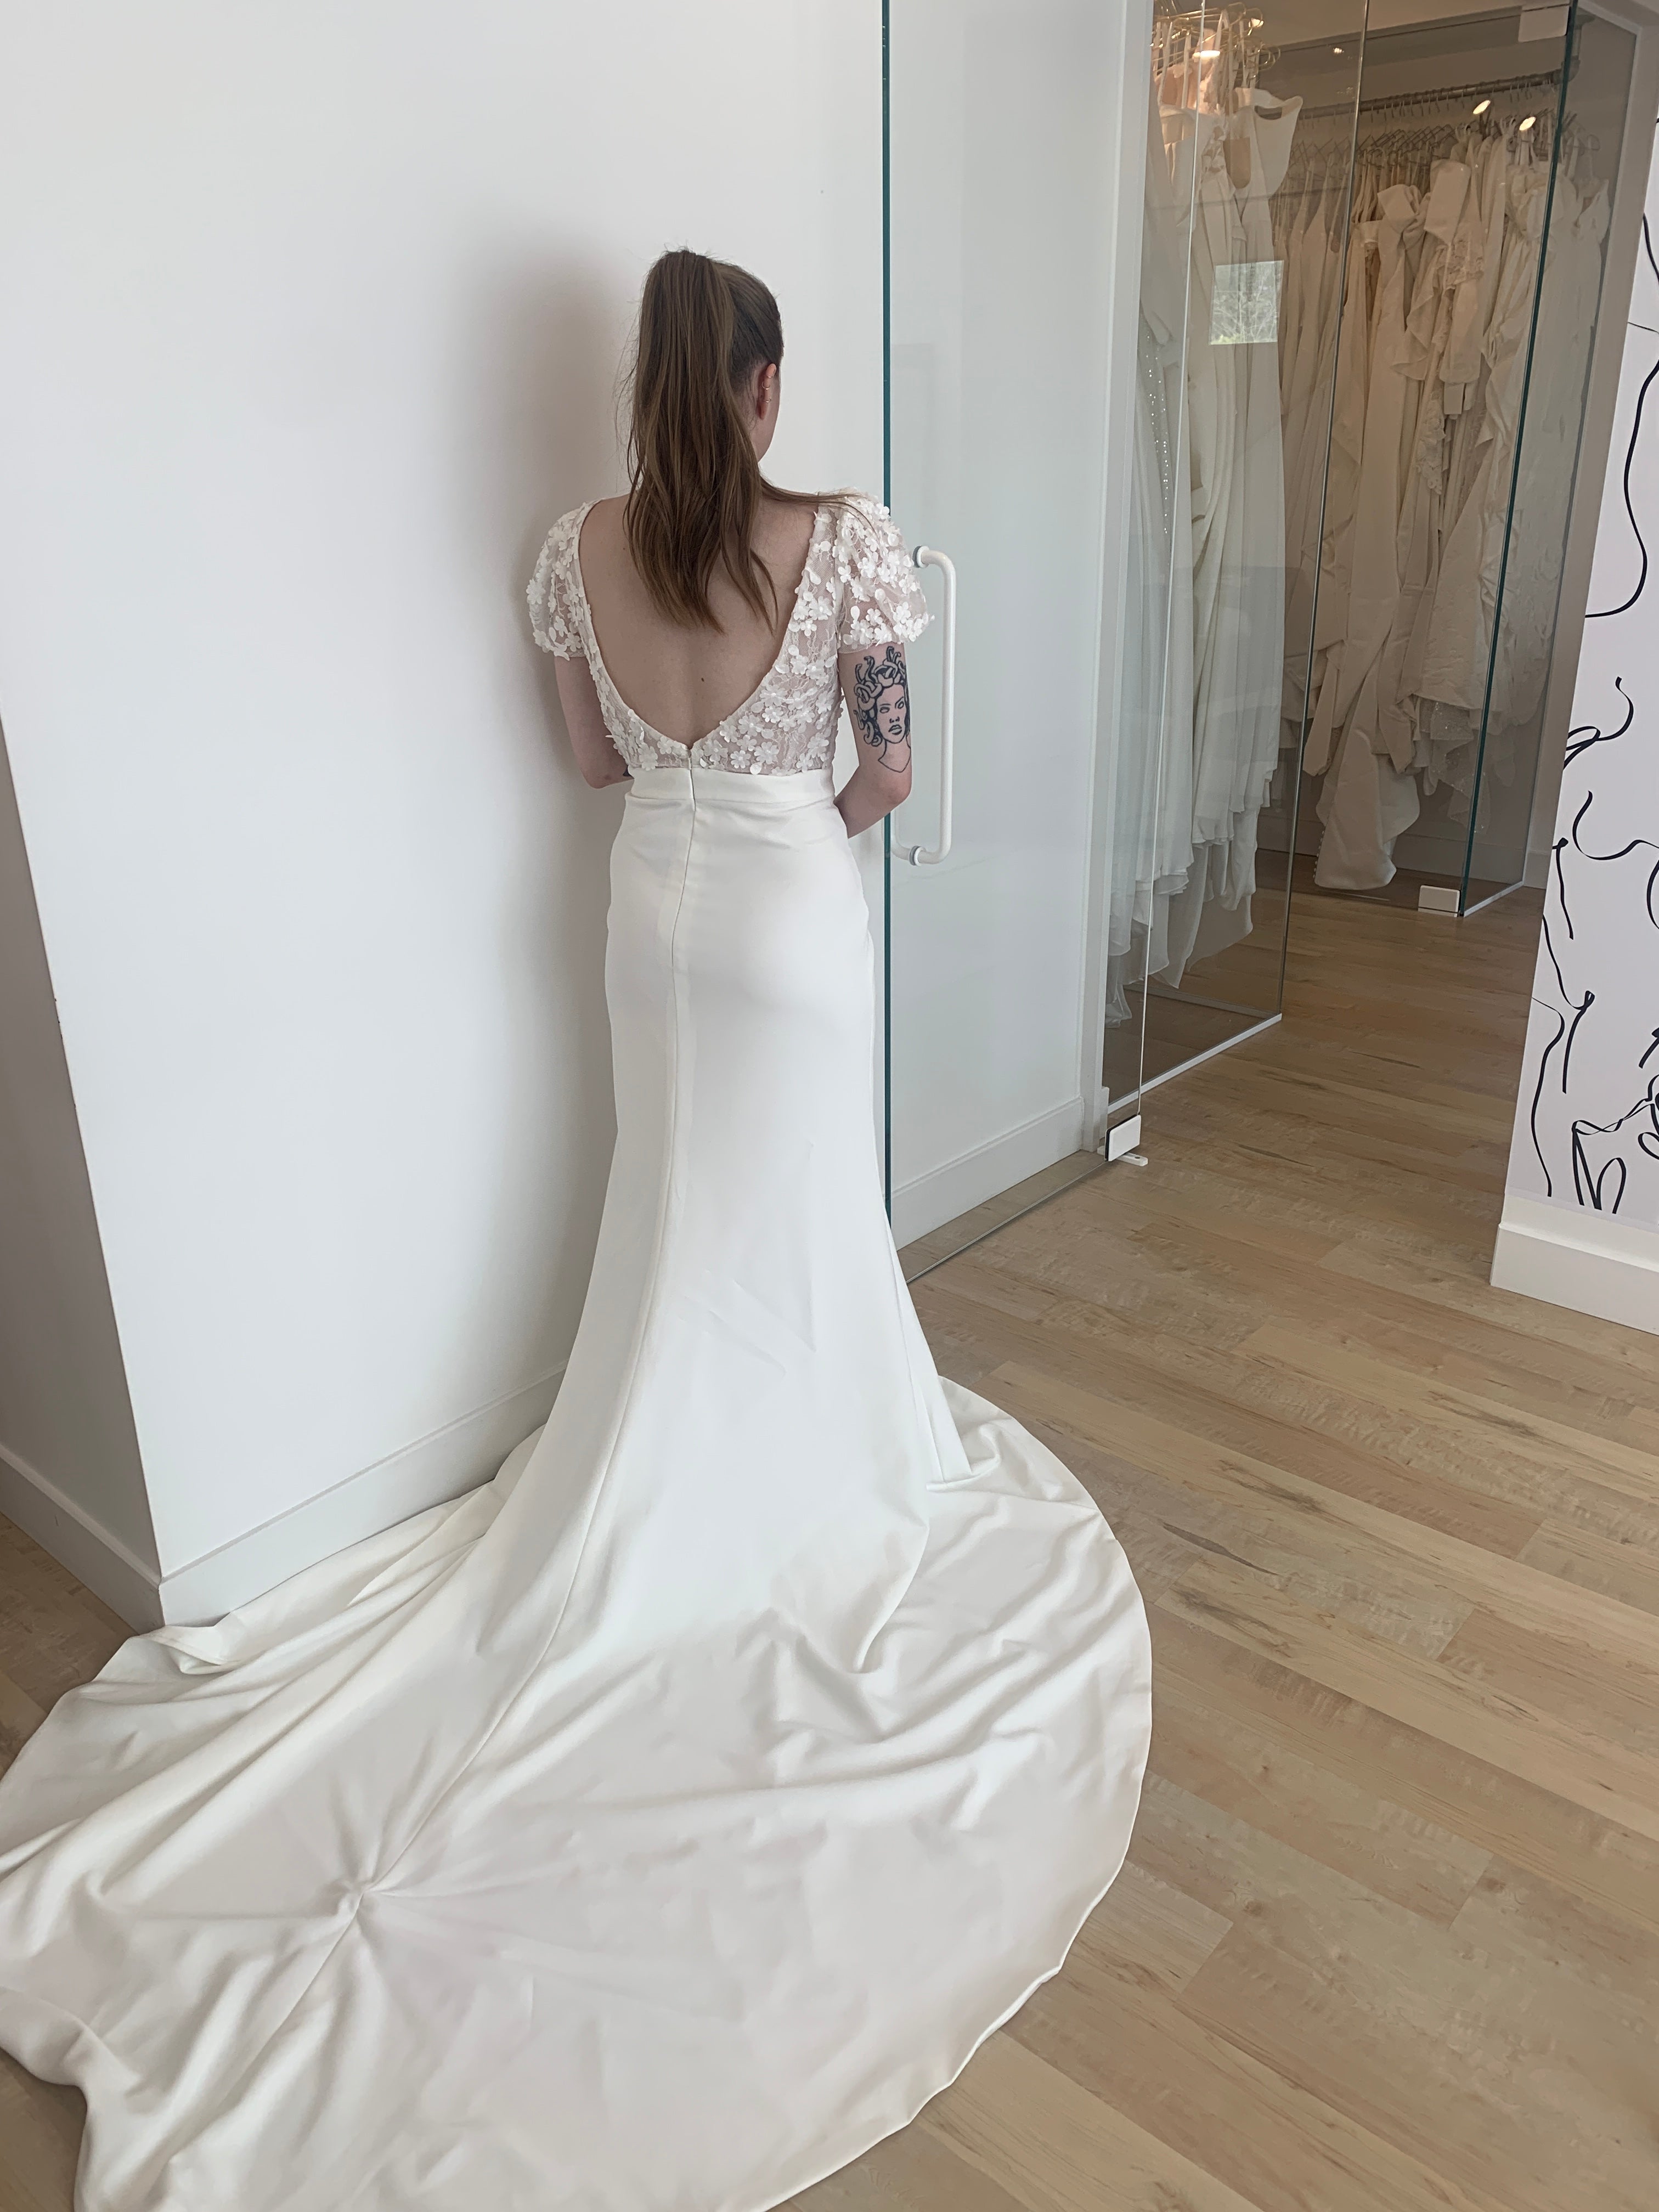 *EXCLUSIVITÉ* Jazlyn - robe de mariée moderne de coupe ajustée avec haut en dentelle à manches courtes bouffantes et jupe en crêpe